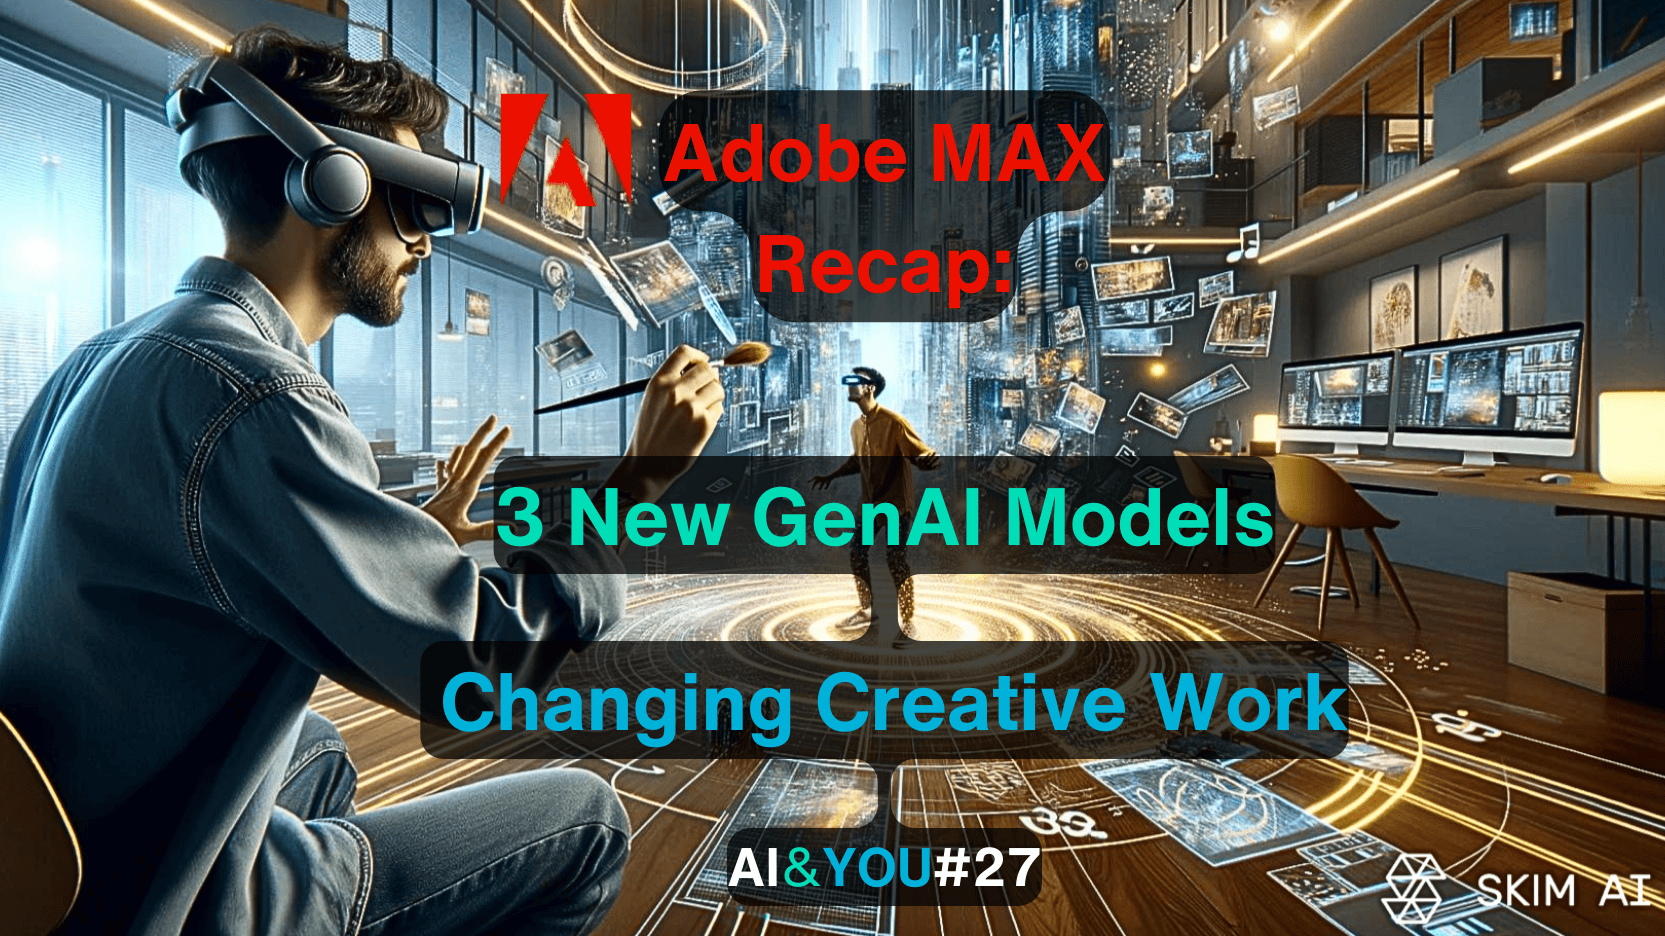 AI&YOU#27: Adobe Max introduz três importantes modelos de IA generativa